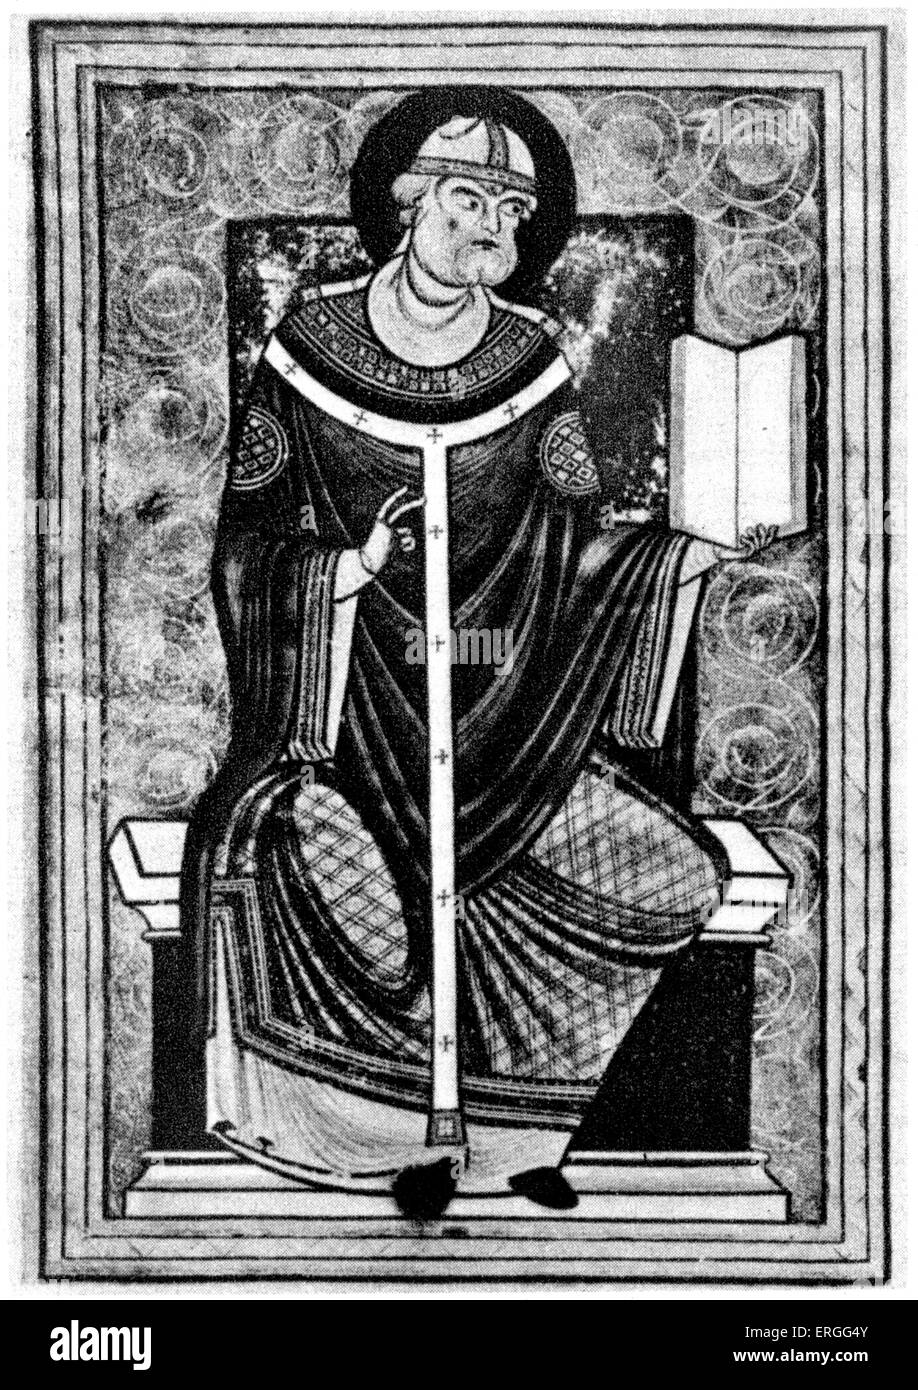 Papst Gregory I - Miniatur aus dem lateinischen Handschrift. Papst von 3 September 590 bis zu seinem Tod. Besser bekannt als Gregor der große, Stockfoto